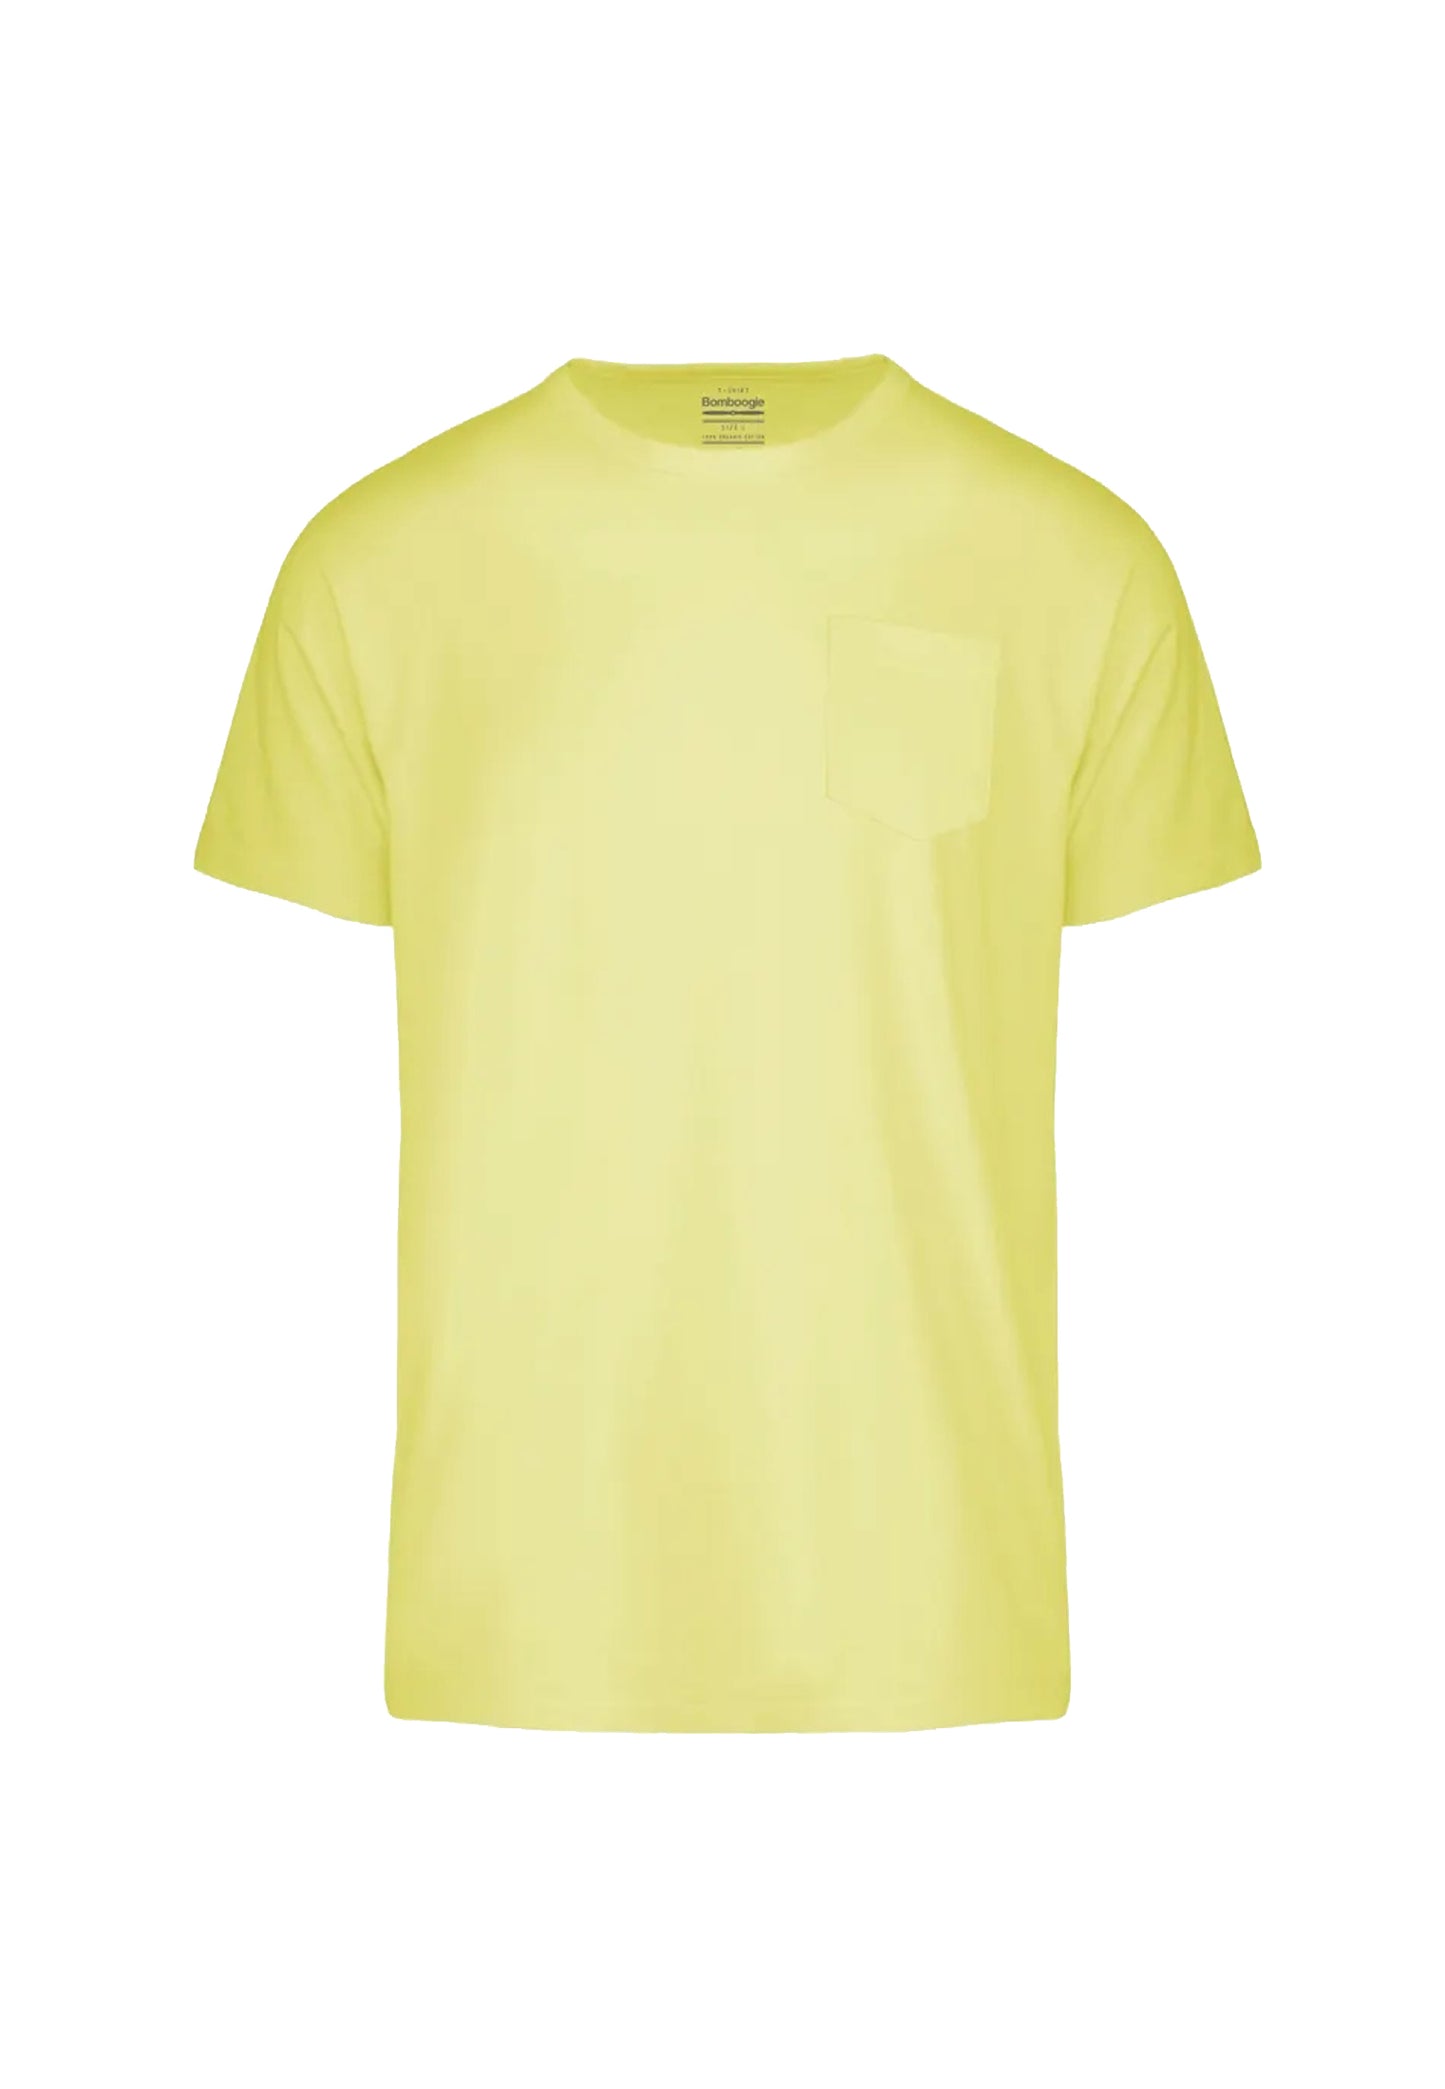 T-shirt girocollo cotone organico gialla Bomboogie P24